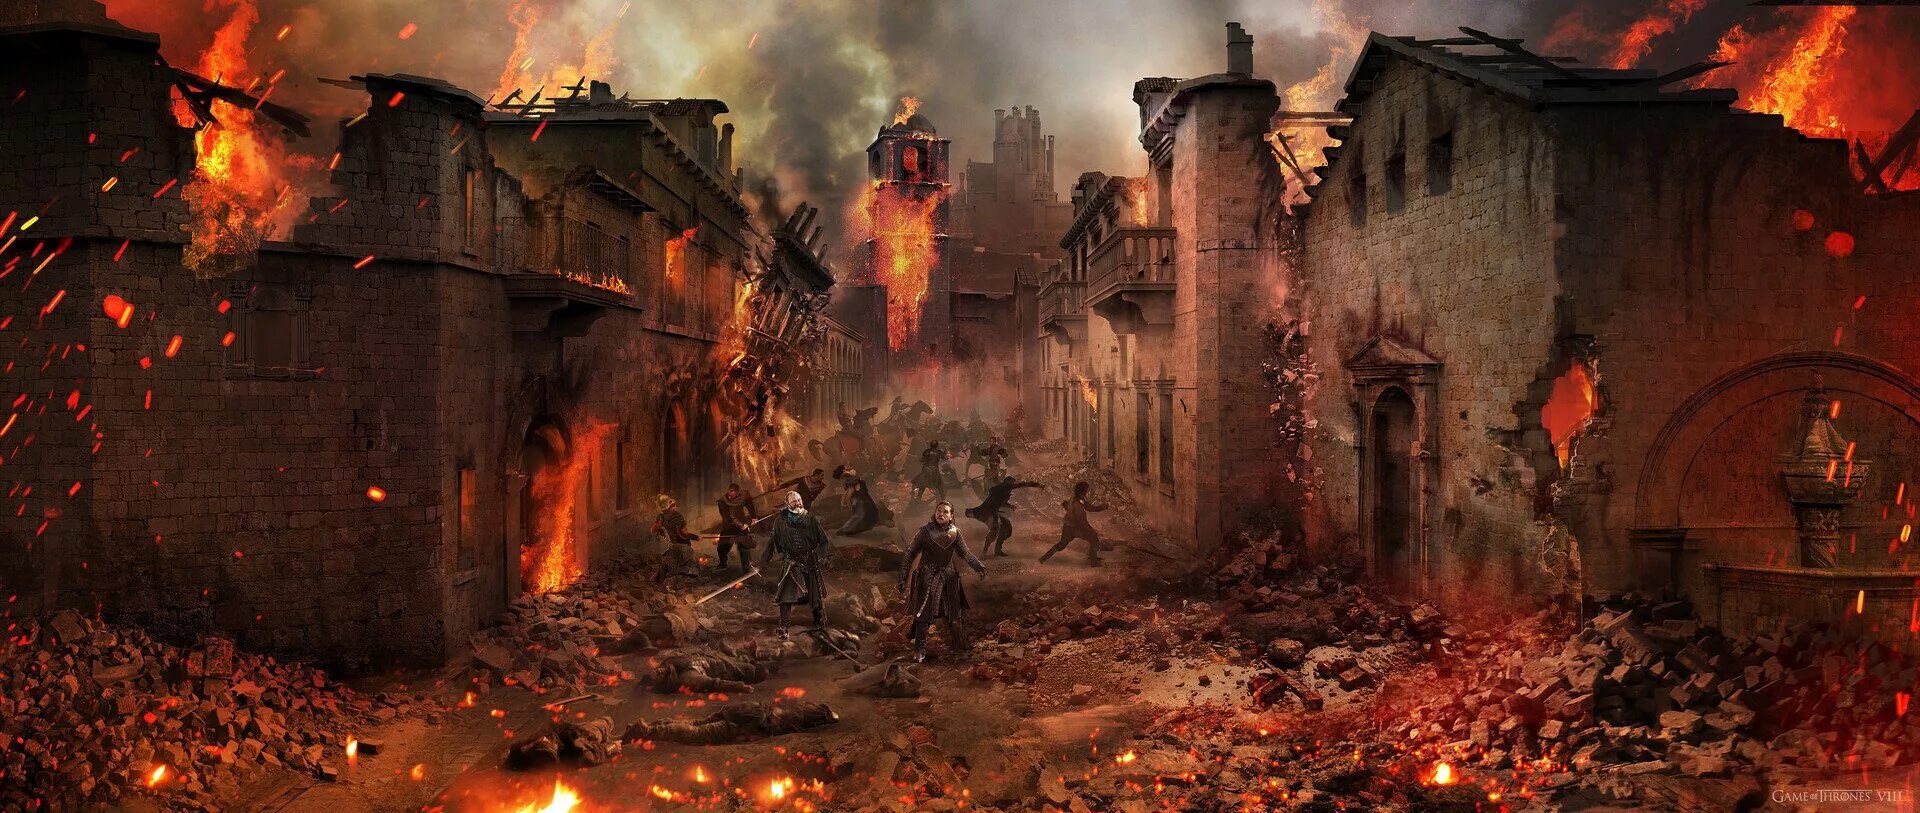 Город после пожара. Горящий город средневековье. Разрушенный город. Руины в огне.